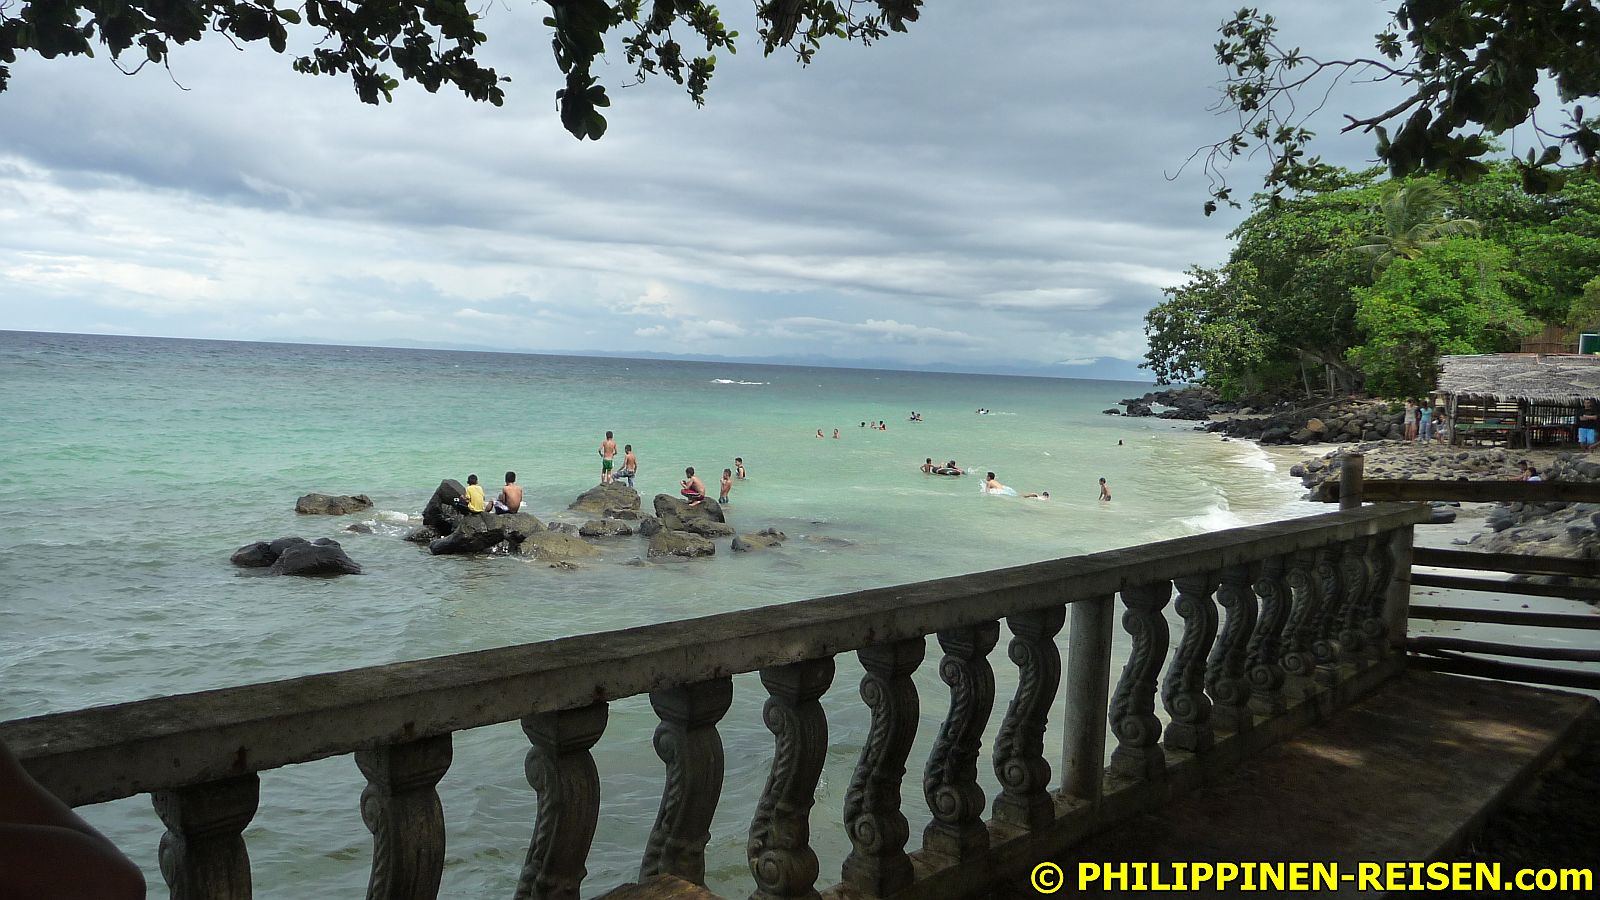 PHILIPPINEN REISEN - ORTE - MINDANAO - MISAMIS ORIENTAL - Touristische Beschreibung für den Ort Talisayan